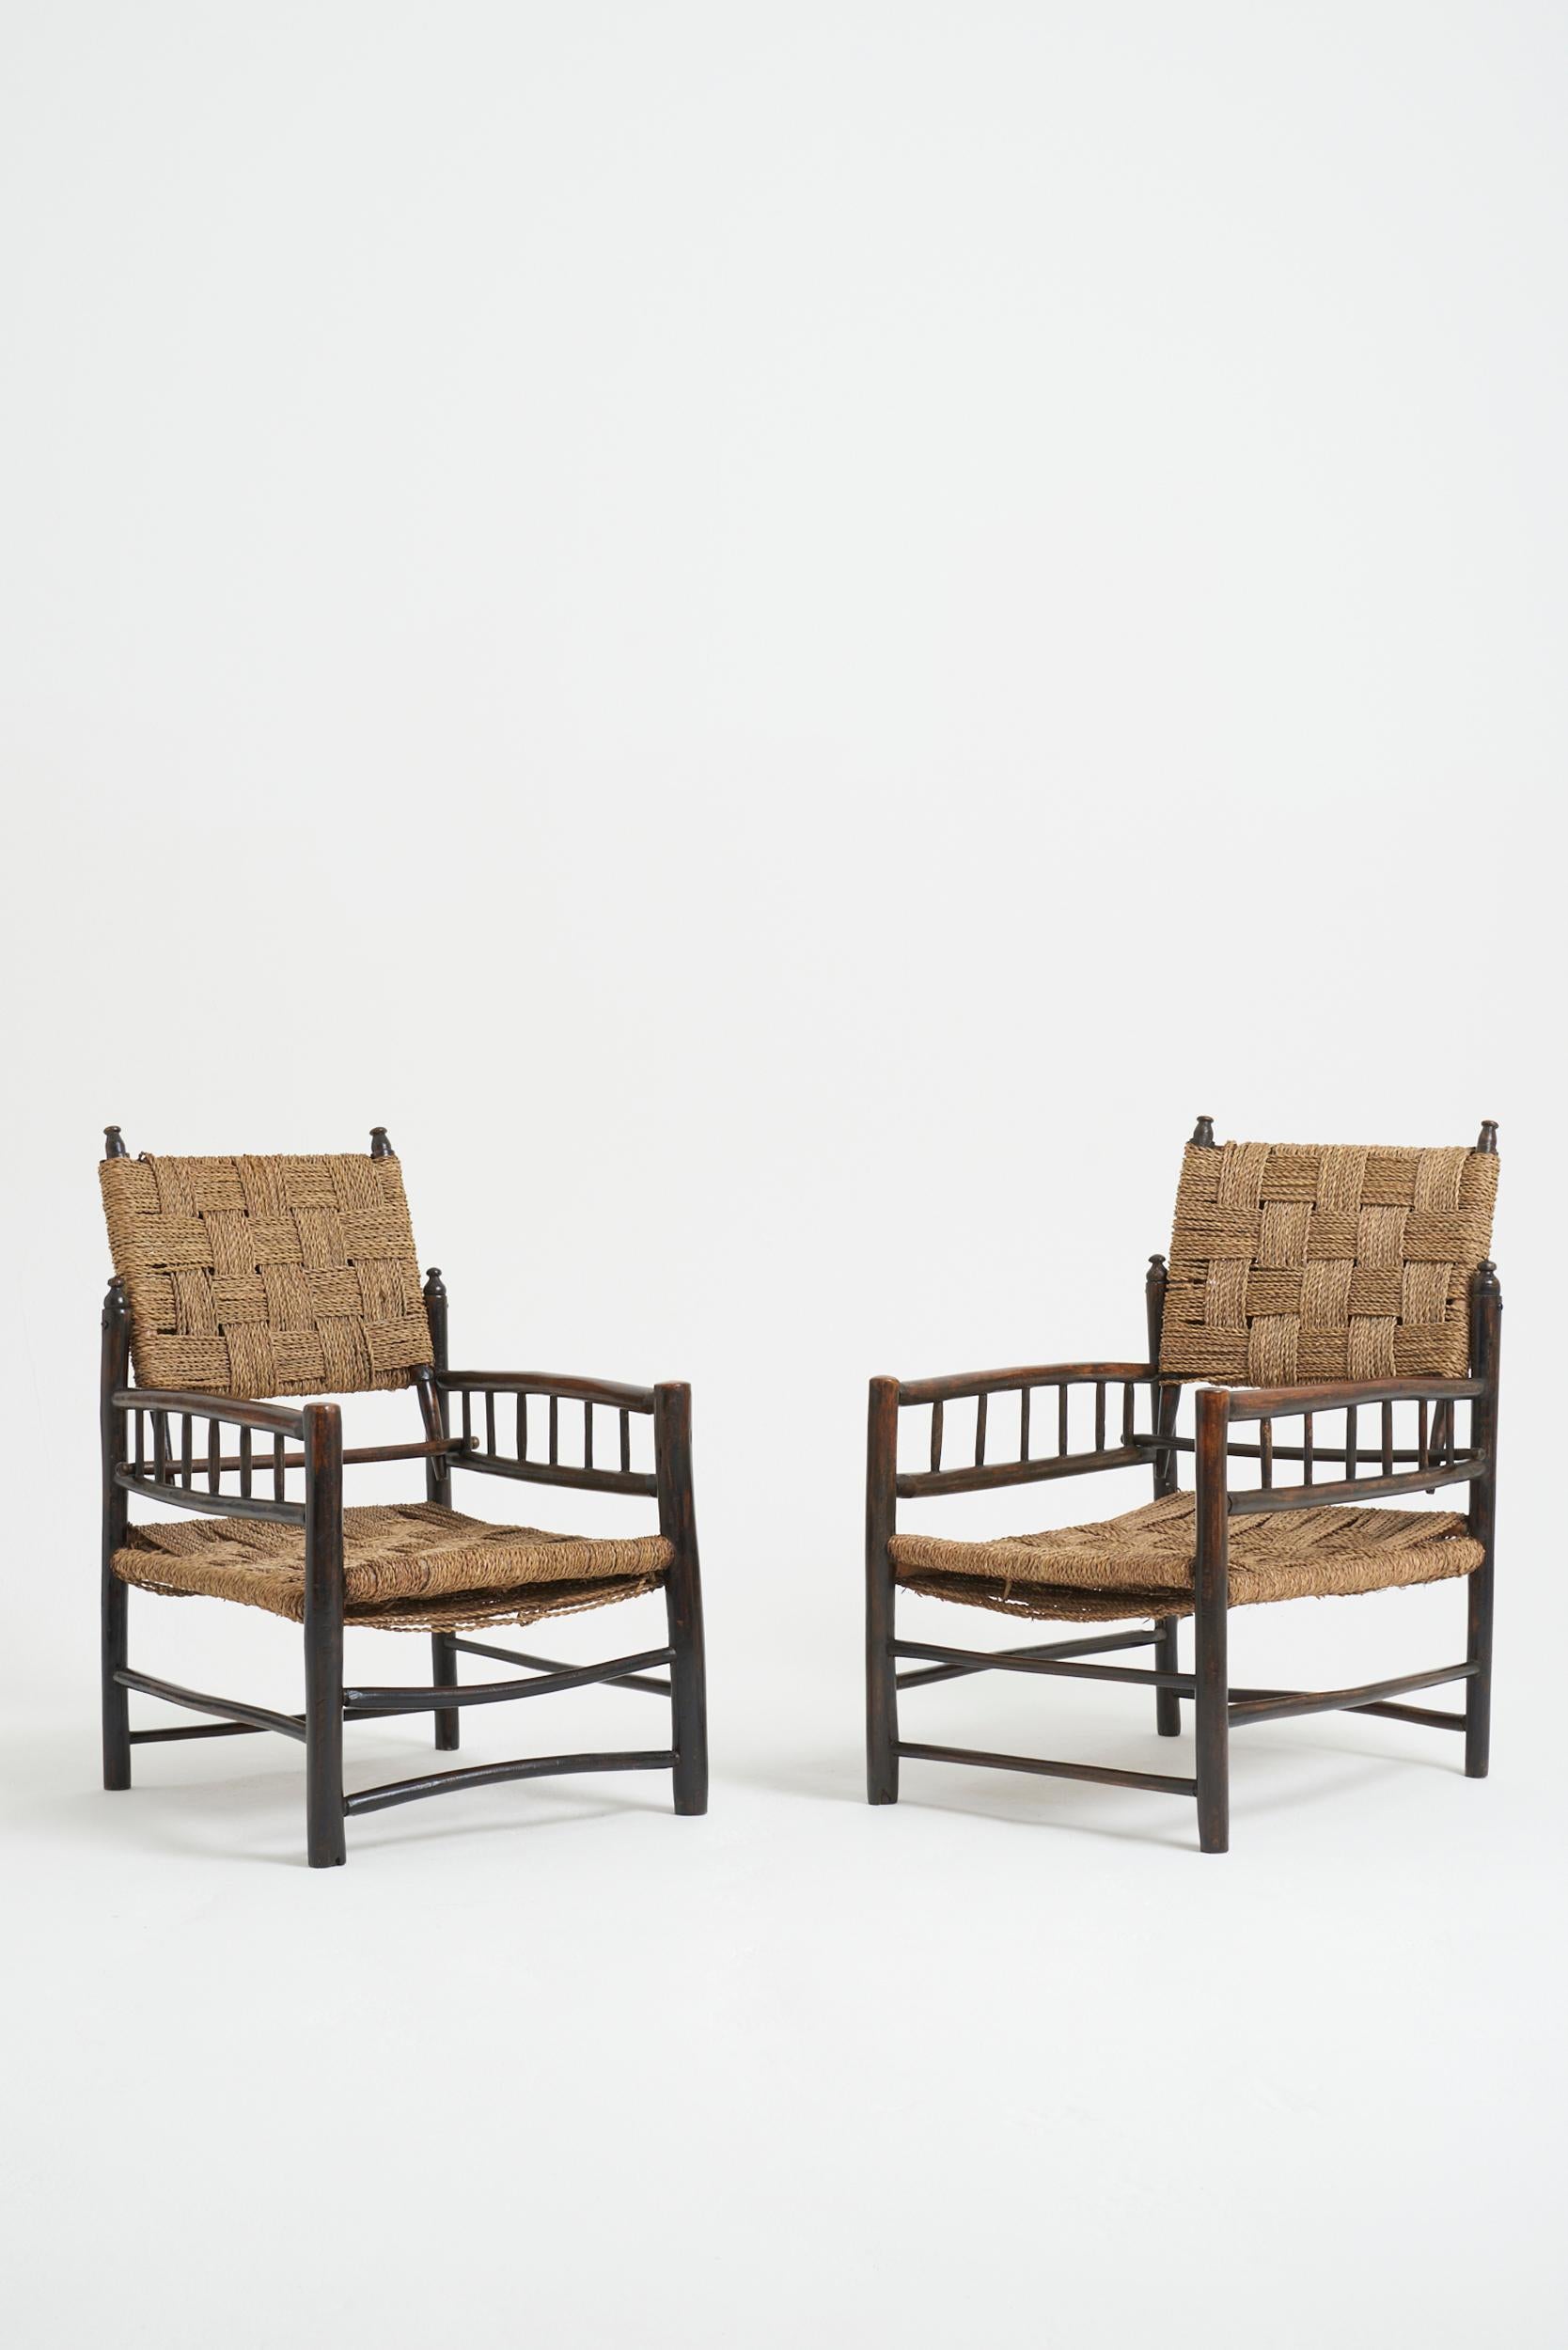 Ein Paar volkstümliche Sessel mit Sitz und Rückenlehne aus Seil.
Frankreich, erste Hälfte des 20. Jahrhunderts
Höhe 81 cm, Breite 51 cm, Tiefe 67 cm, Sitzhöhe 30 cm